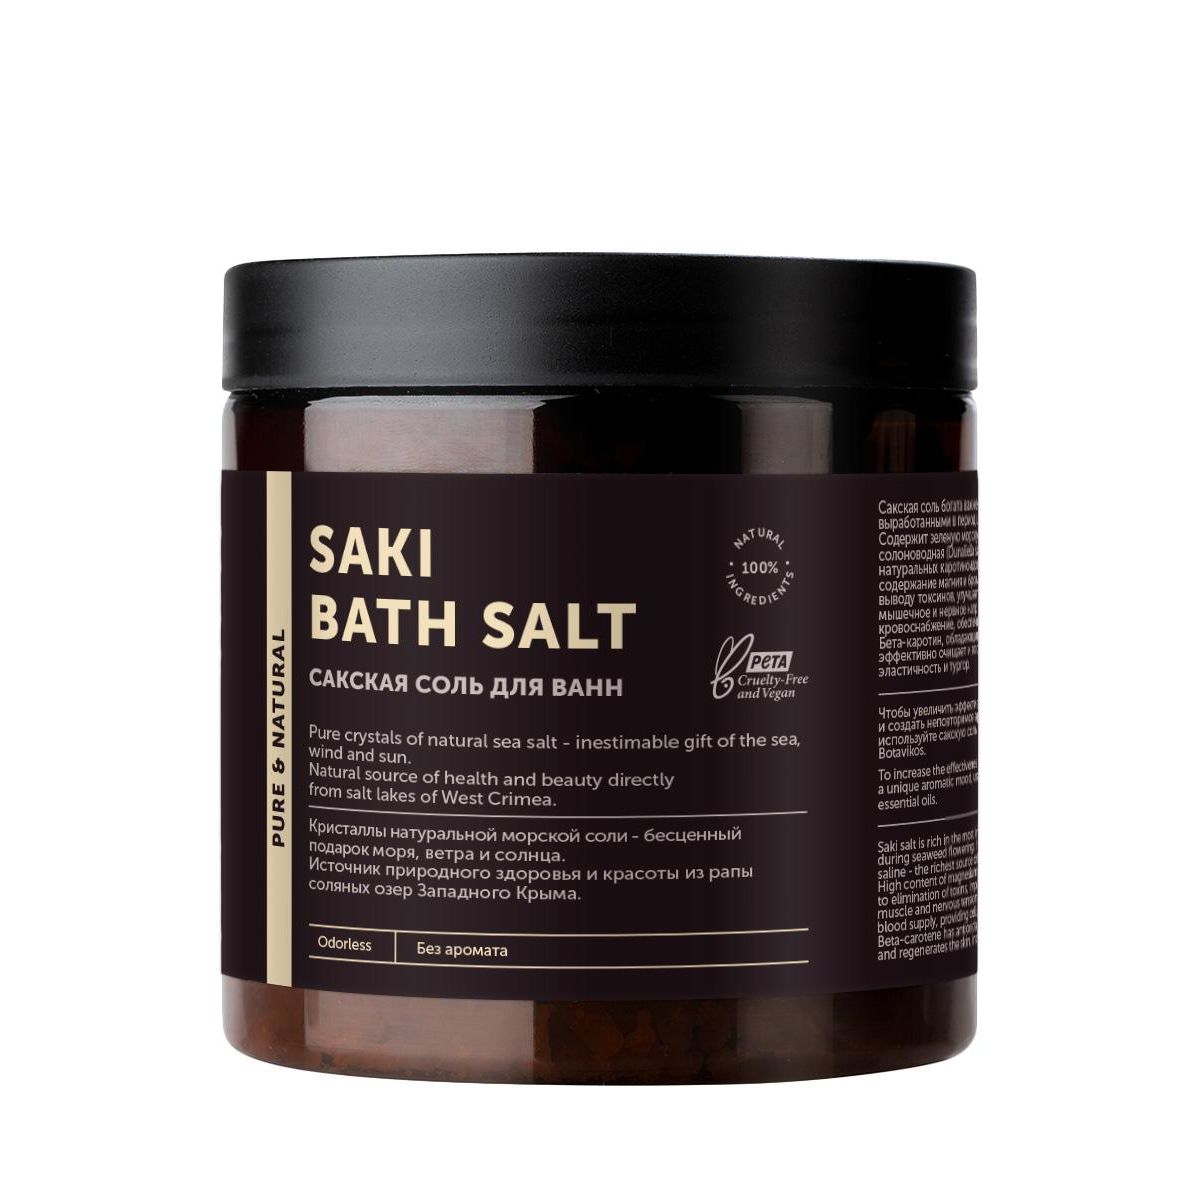 Соль для ванн Botavikos Сакская без аромата, 650 г соль для ванн botavikos сакская aromatherapy body tonic anticellulite 650 г